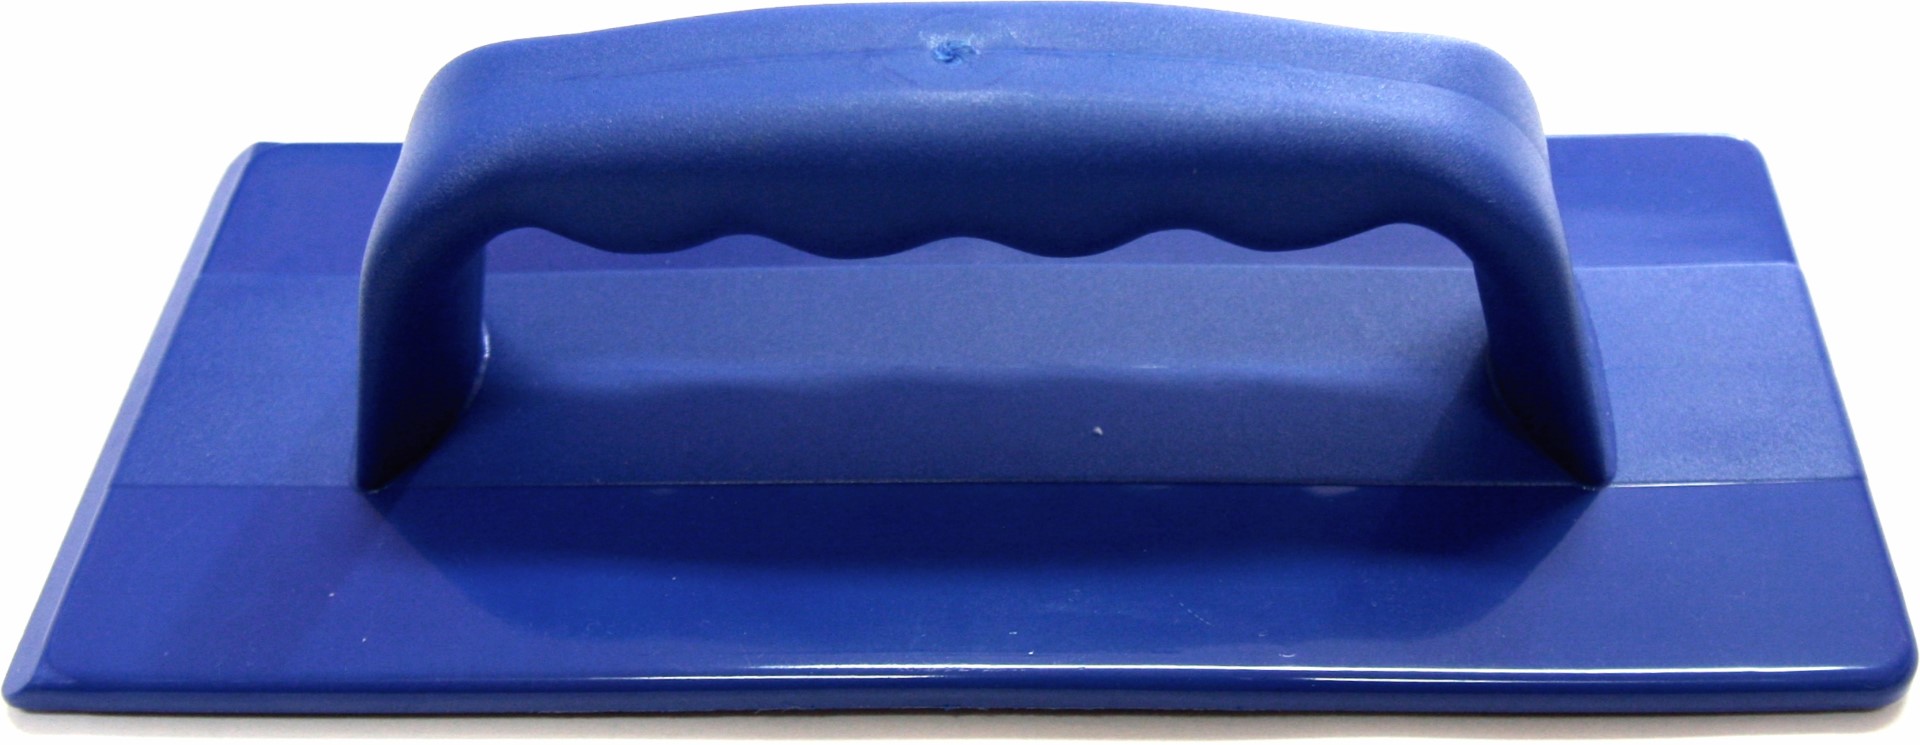 Handpadhalter mit Griff | Blau